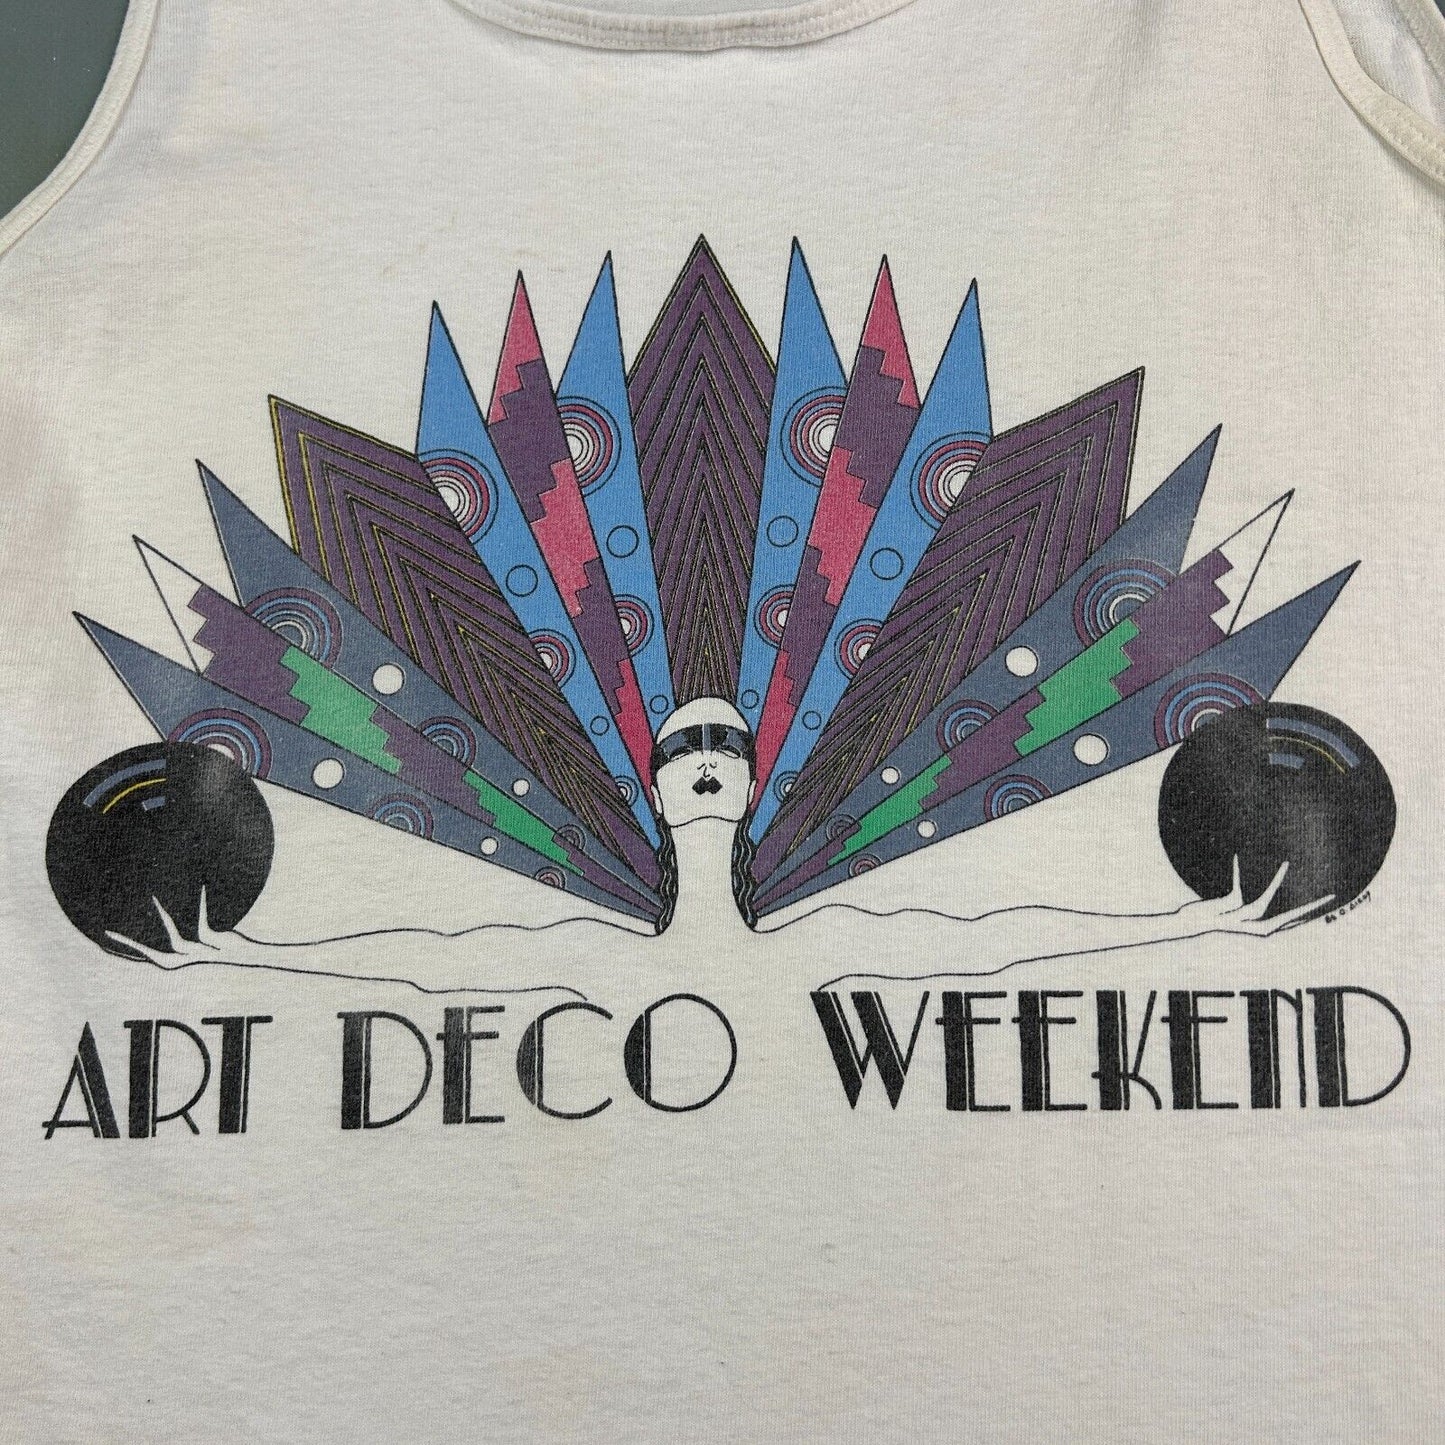 VINTAGE 90s | Art Deco Weekend Sleeveless Tank T-Shirt sz L Adult